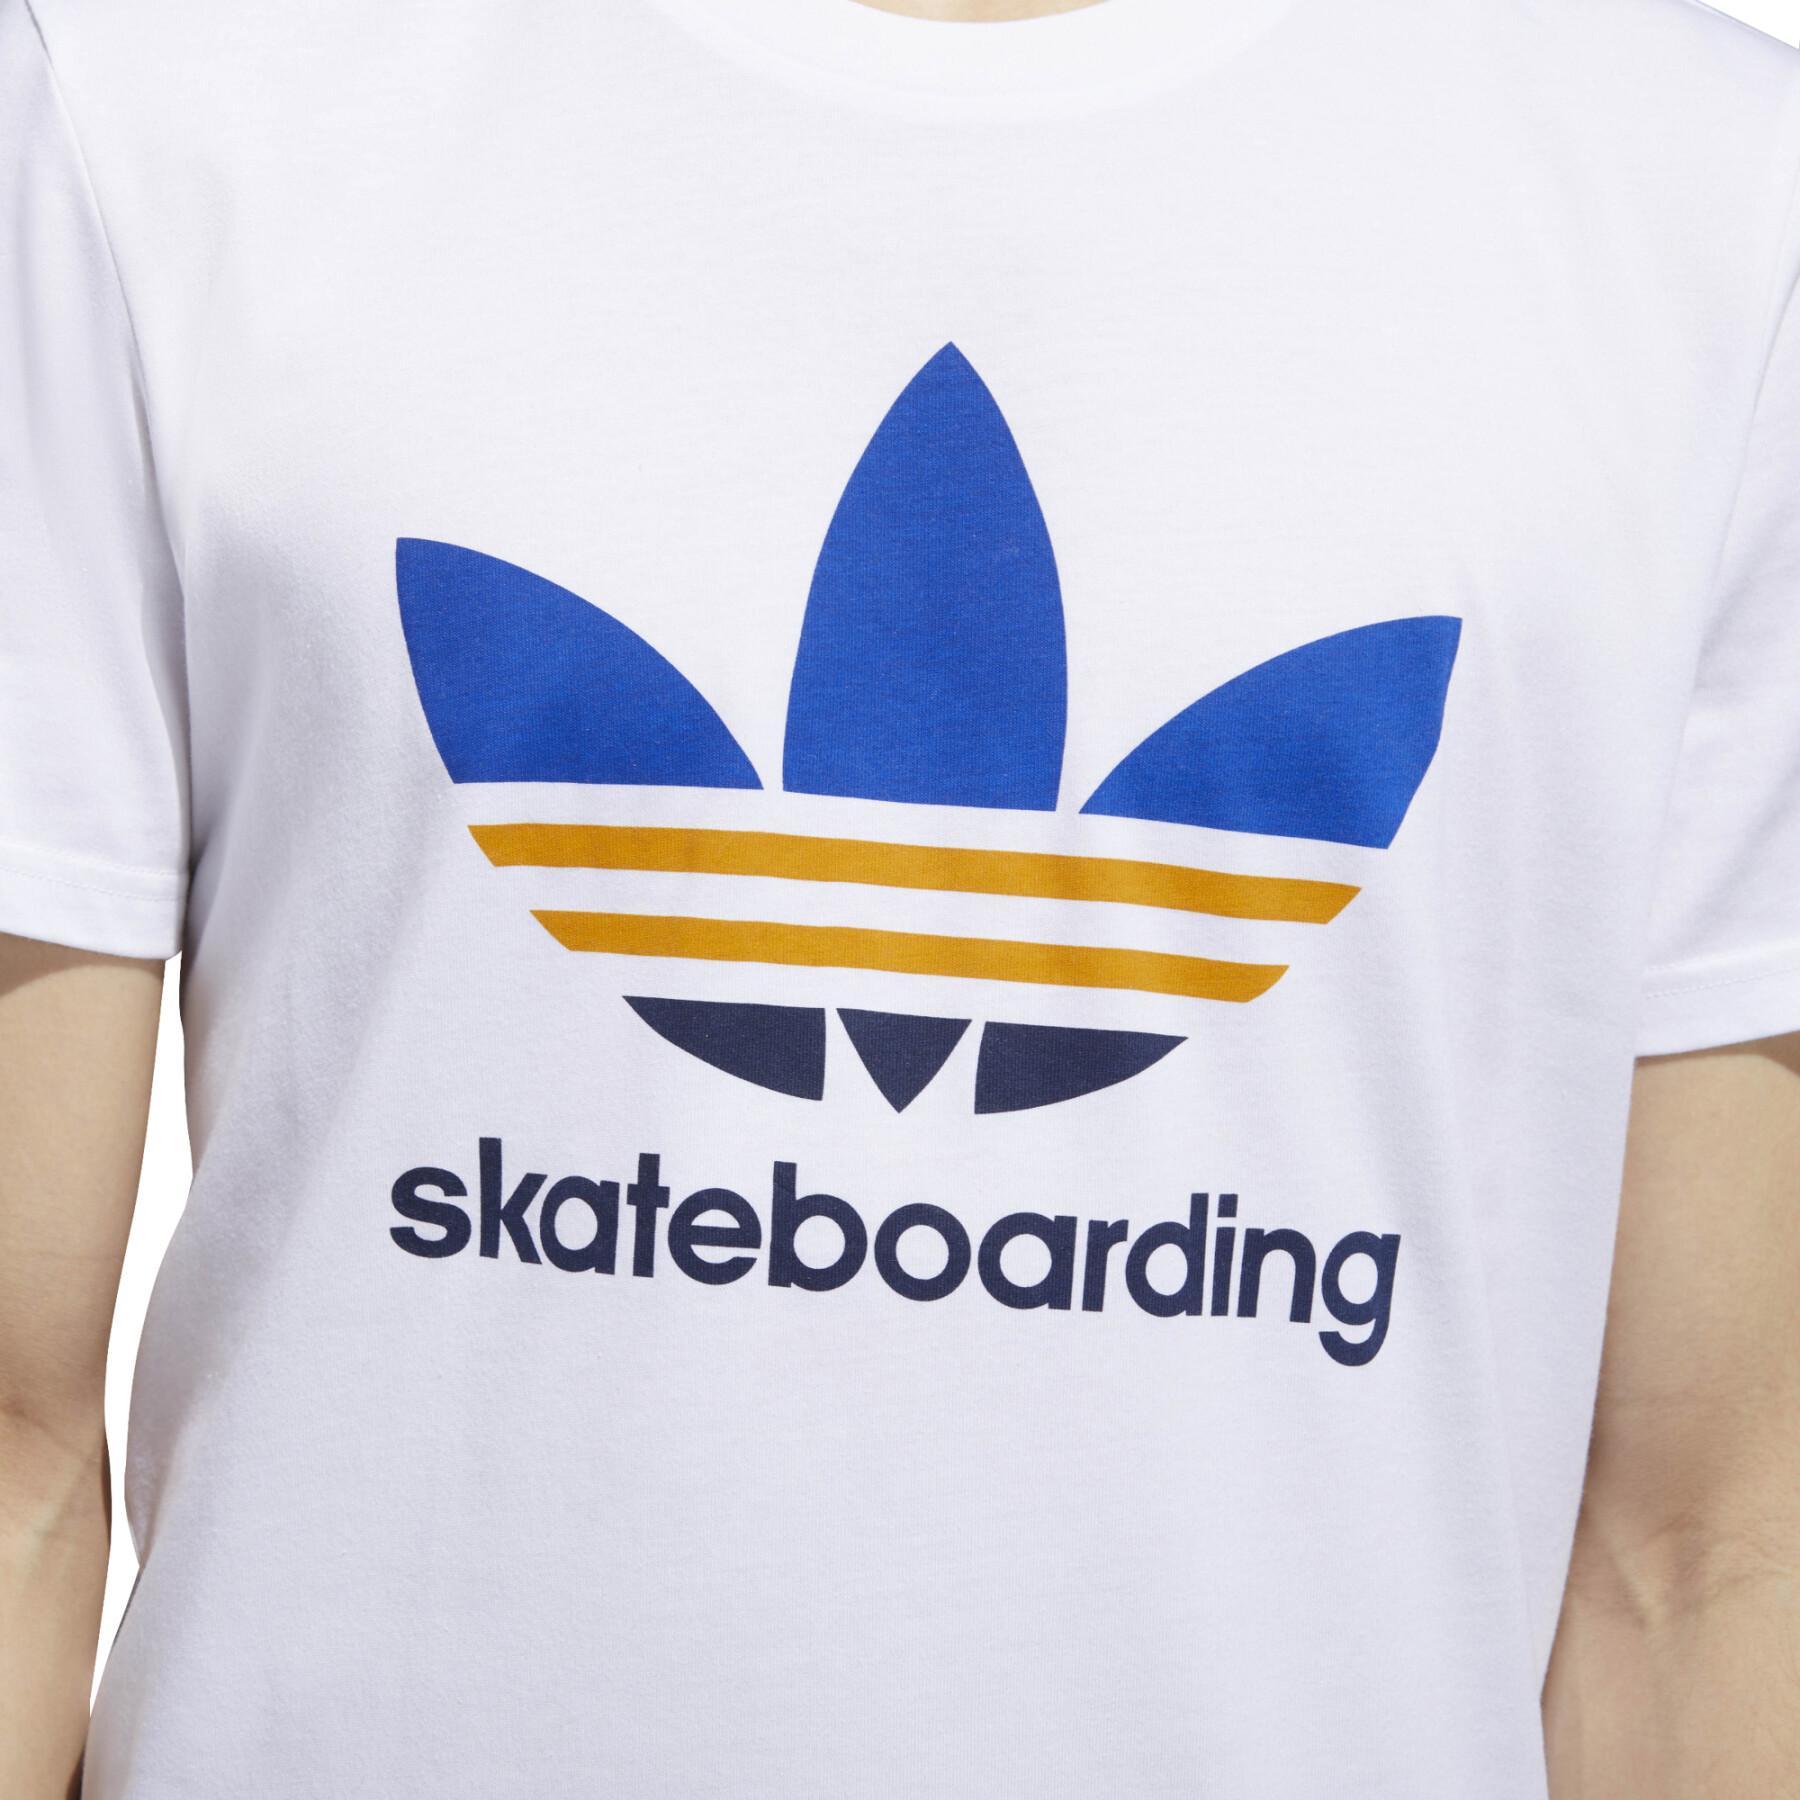 Camiseta adidas Clima 3.0 Skateboarding